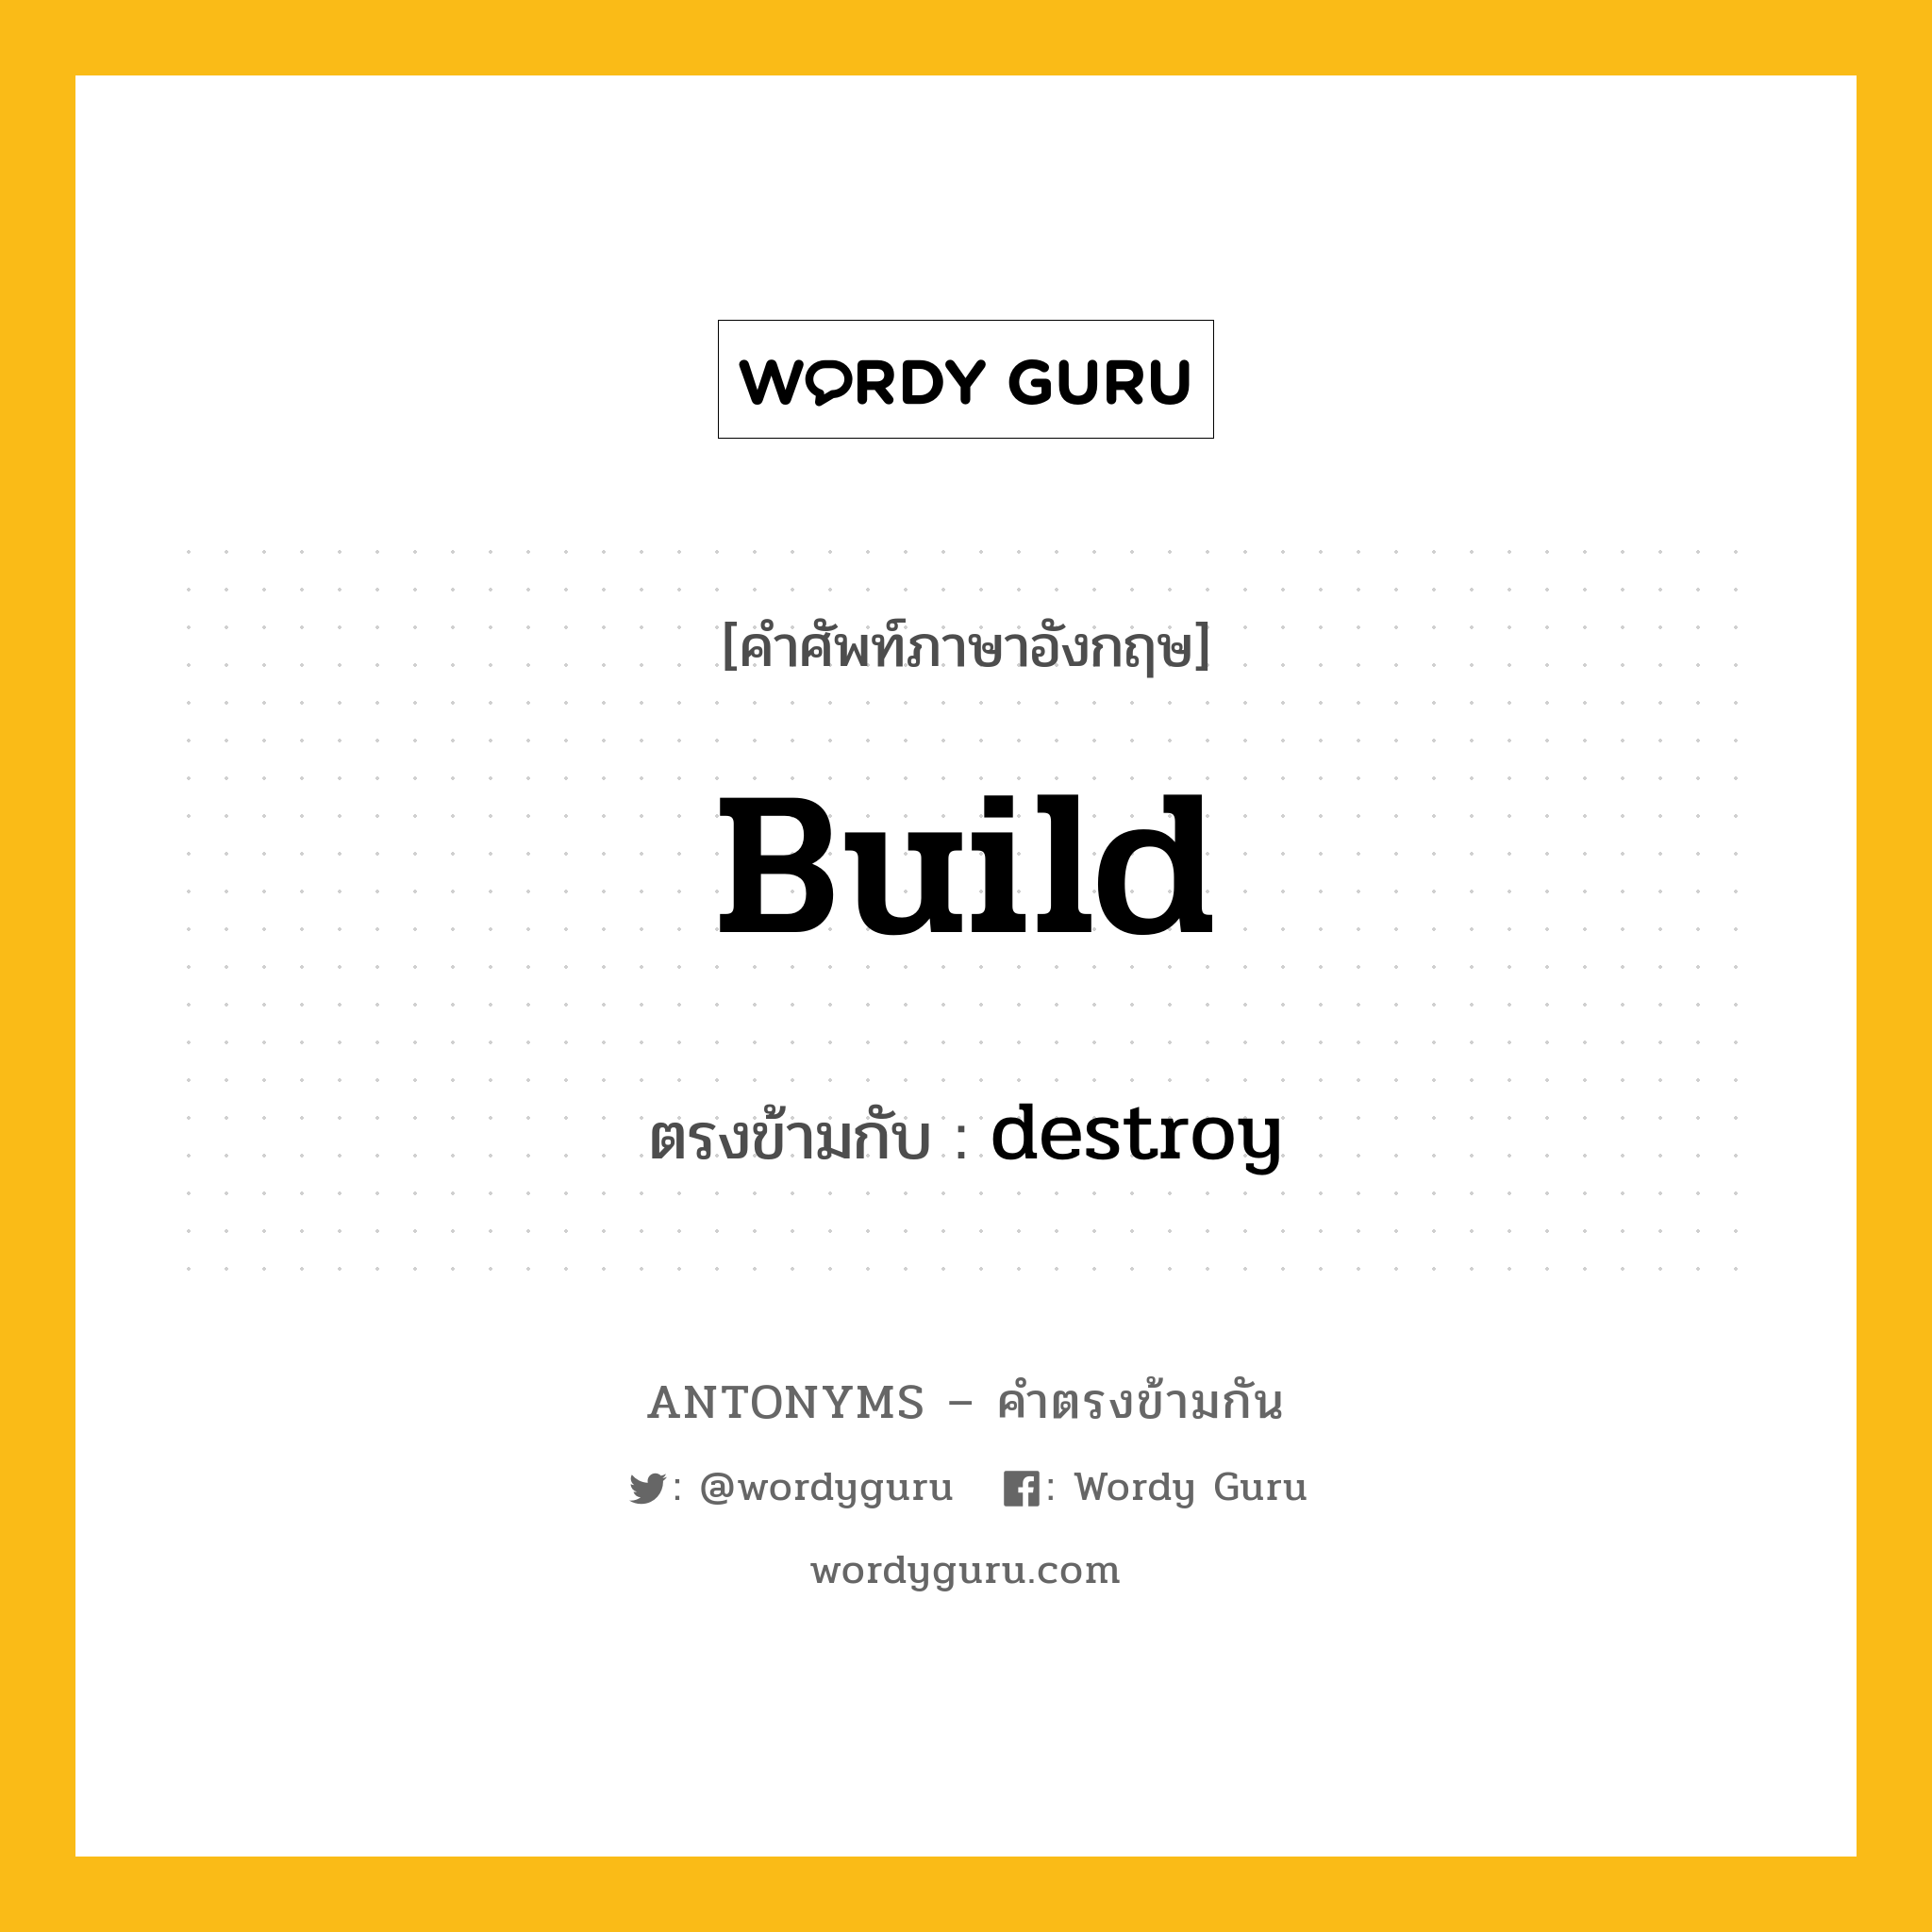 build เป็นคำตรงข้ามกับคำไหนบ้าง?, คำศัพท์ภาษาอังกฤษ build ตรงข้ามกับ destroy หมวด destroy